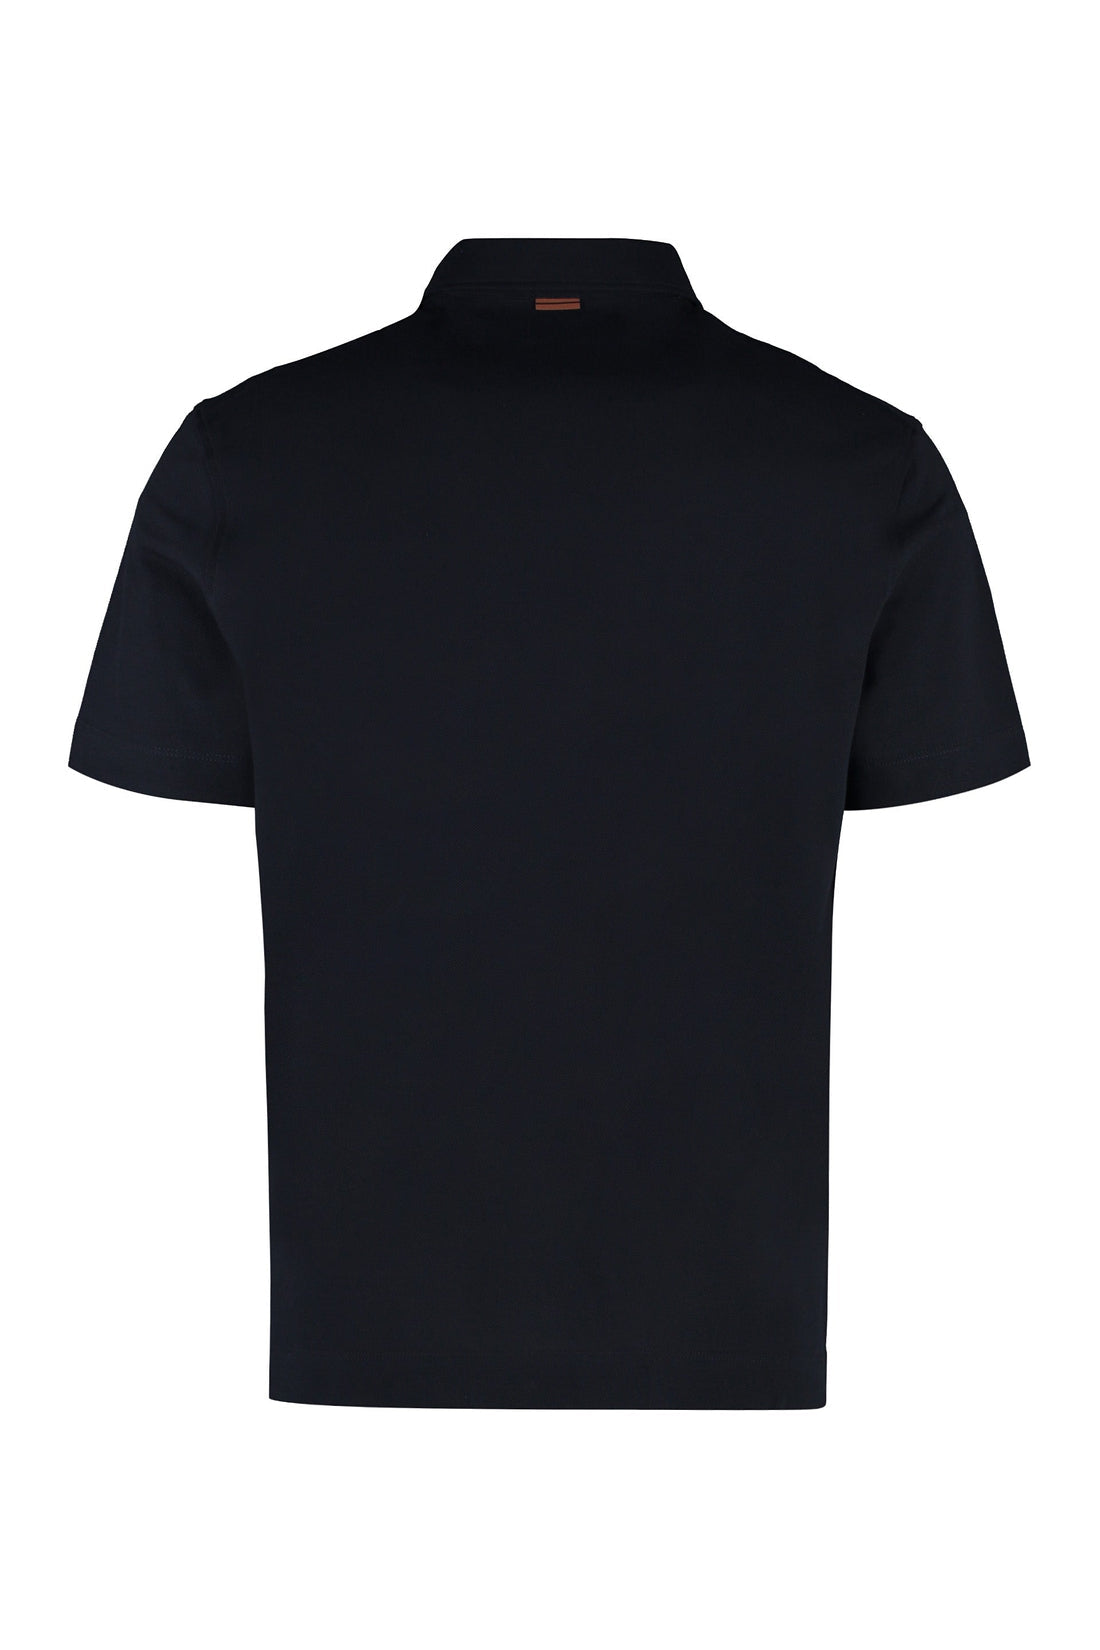 Zegna-OUTLET-SALE-Cotton piqué polo shirt-ARCHIVIST